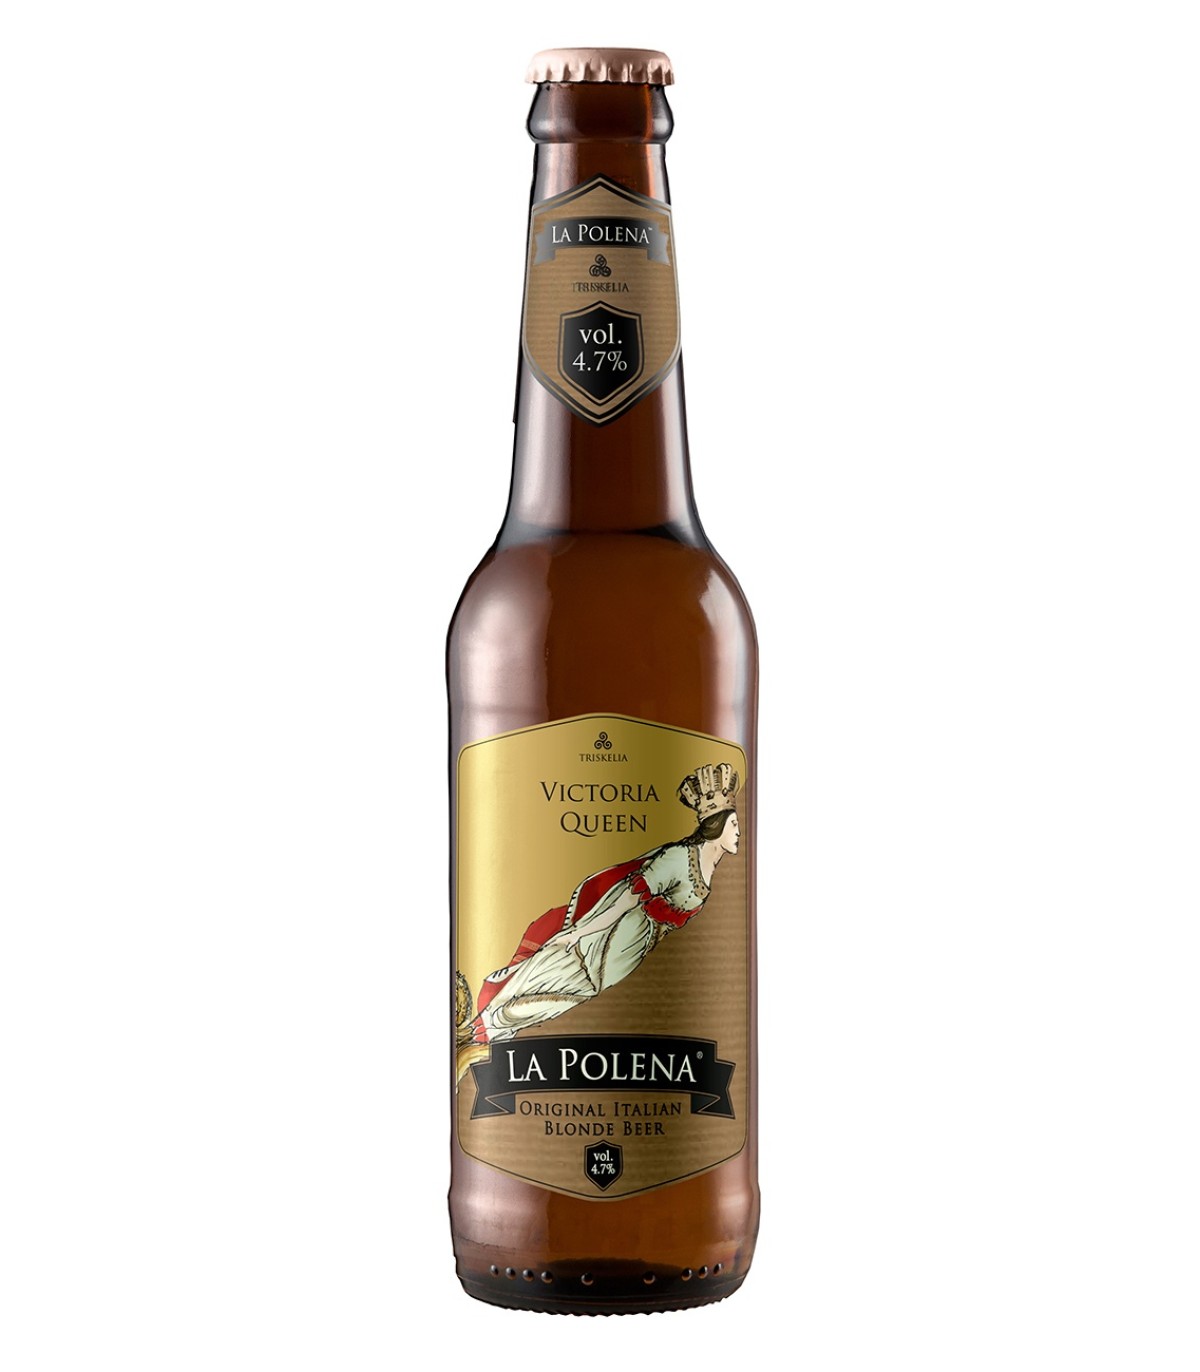 Victoria Queen birra bionda cruda 4,7% Vol. - La Polena